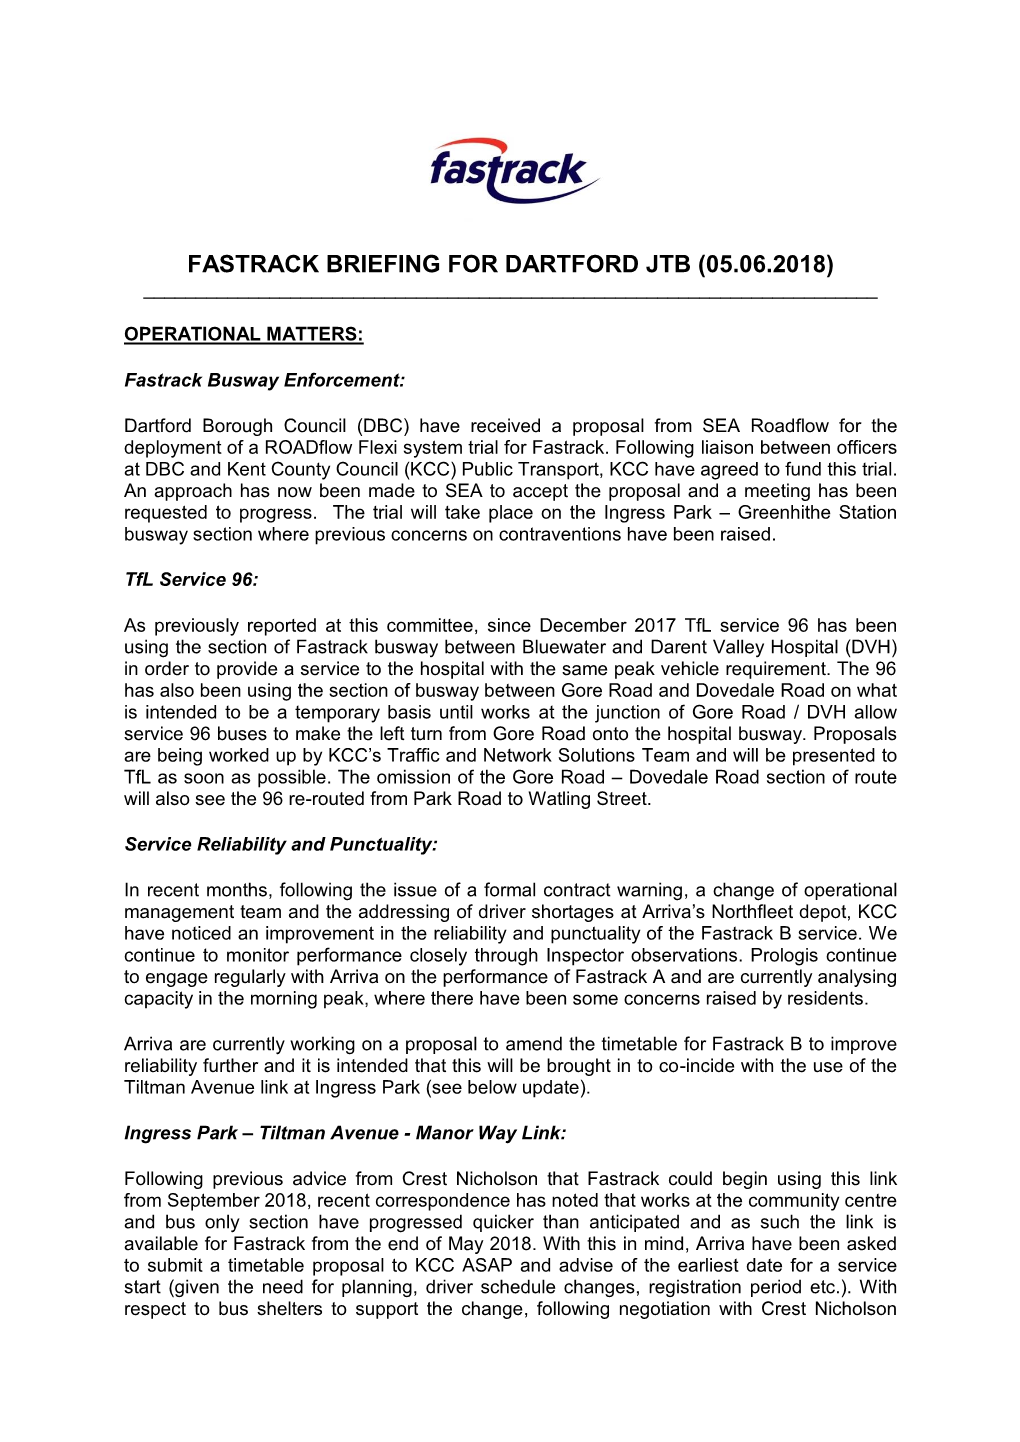 Fastrack Briefing for Dartford Jtb (05.06.2018) ______